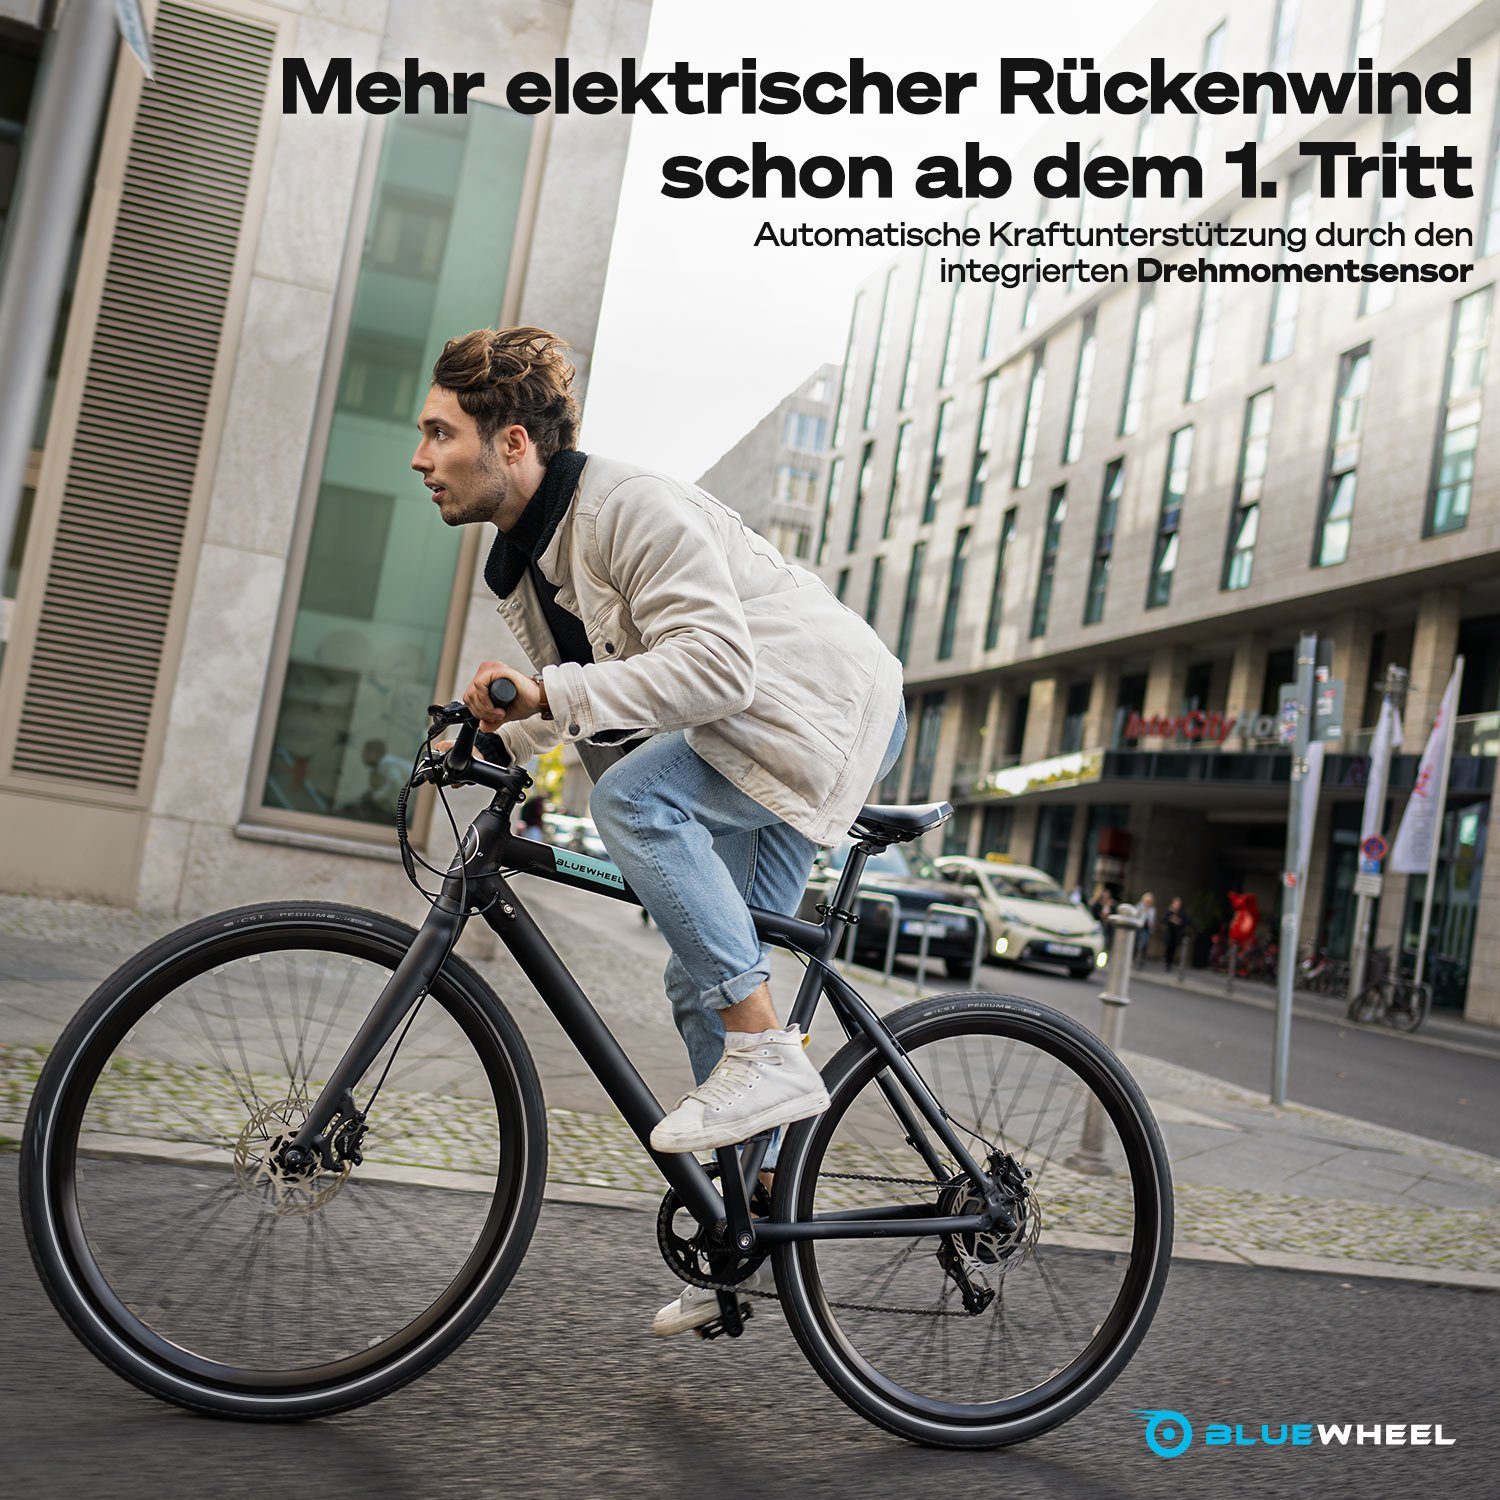 Shimano BUTEO, & zu bis Hinterradmotor Display OLED Heckmotor, für Bluewheel km/h Gang 7 mit Schaltwerk, E-Bike 25 Electromobility 60 App km Kettenschaltung,